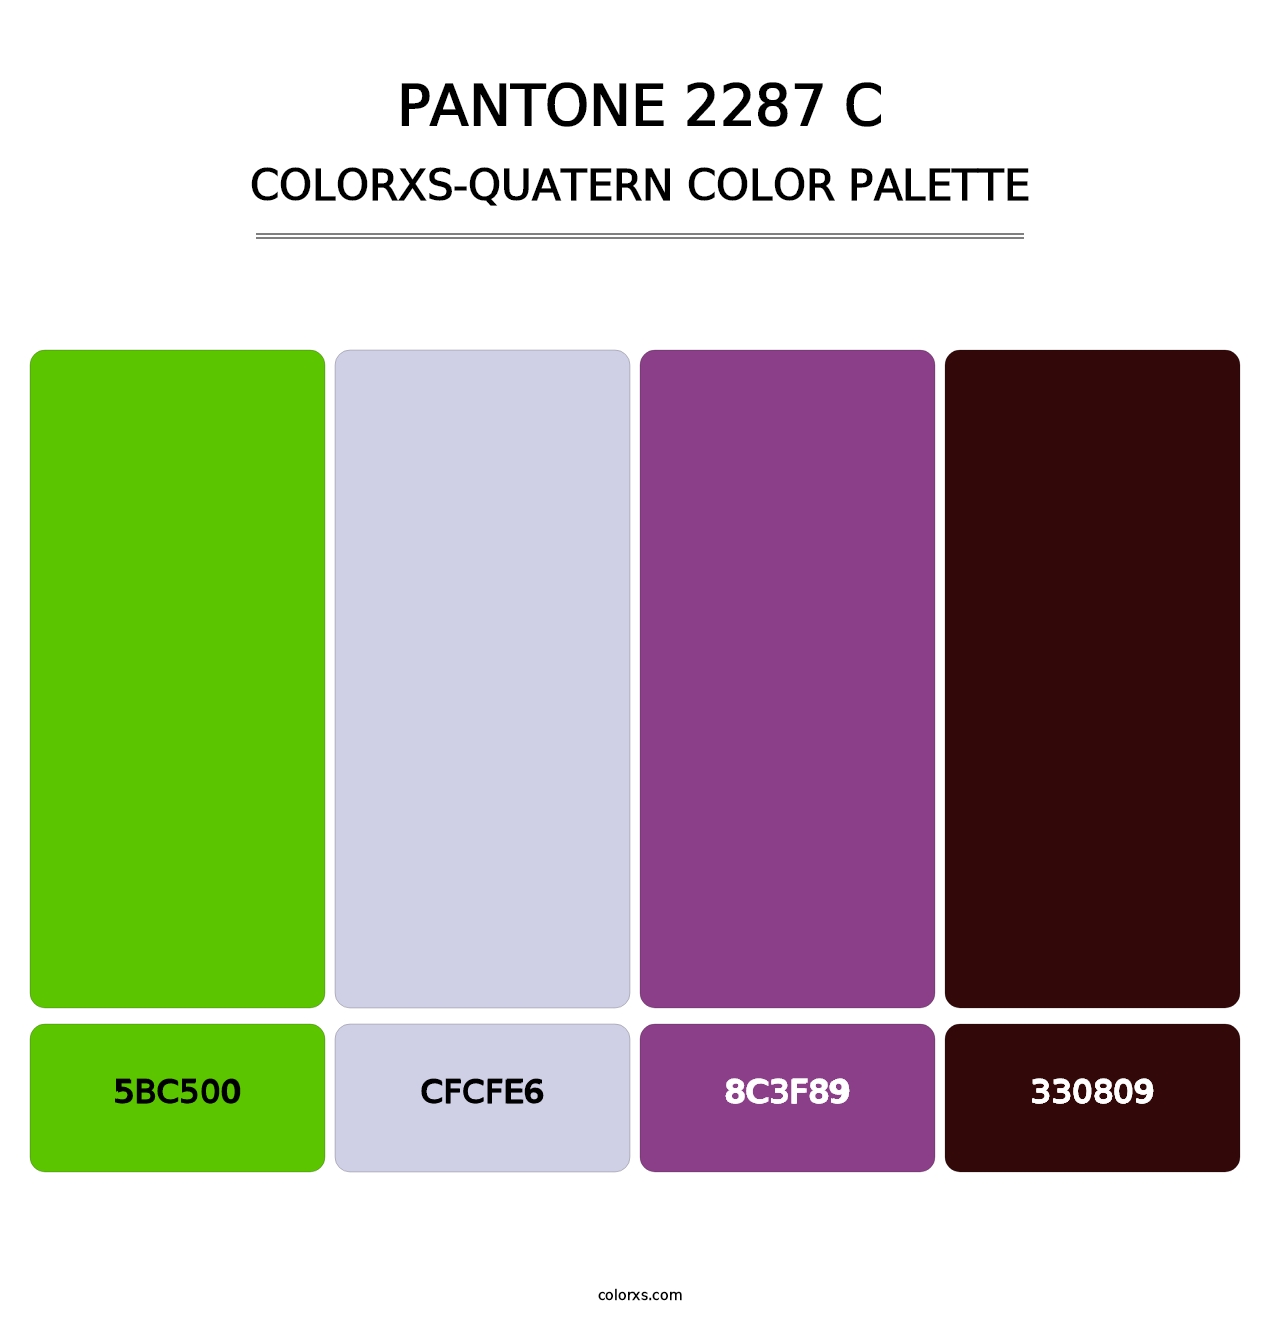 PANTONE 2287 C - Colorxs Quatern Palette